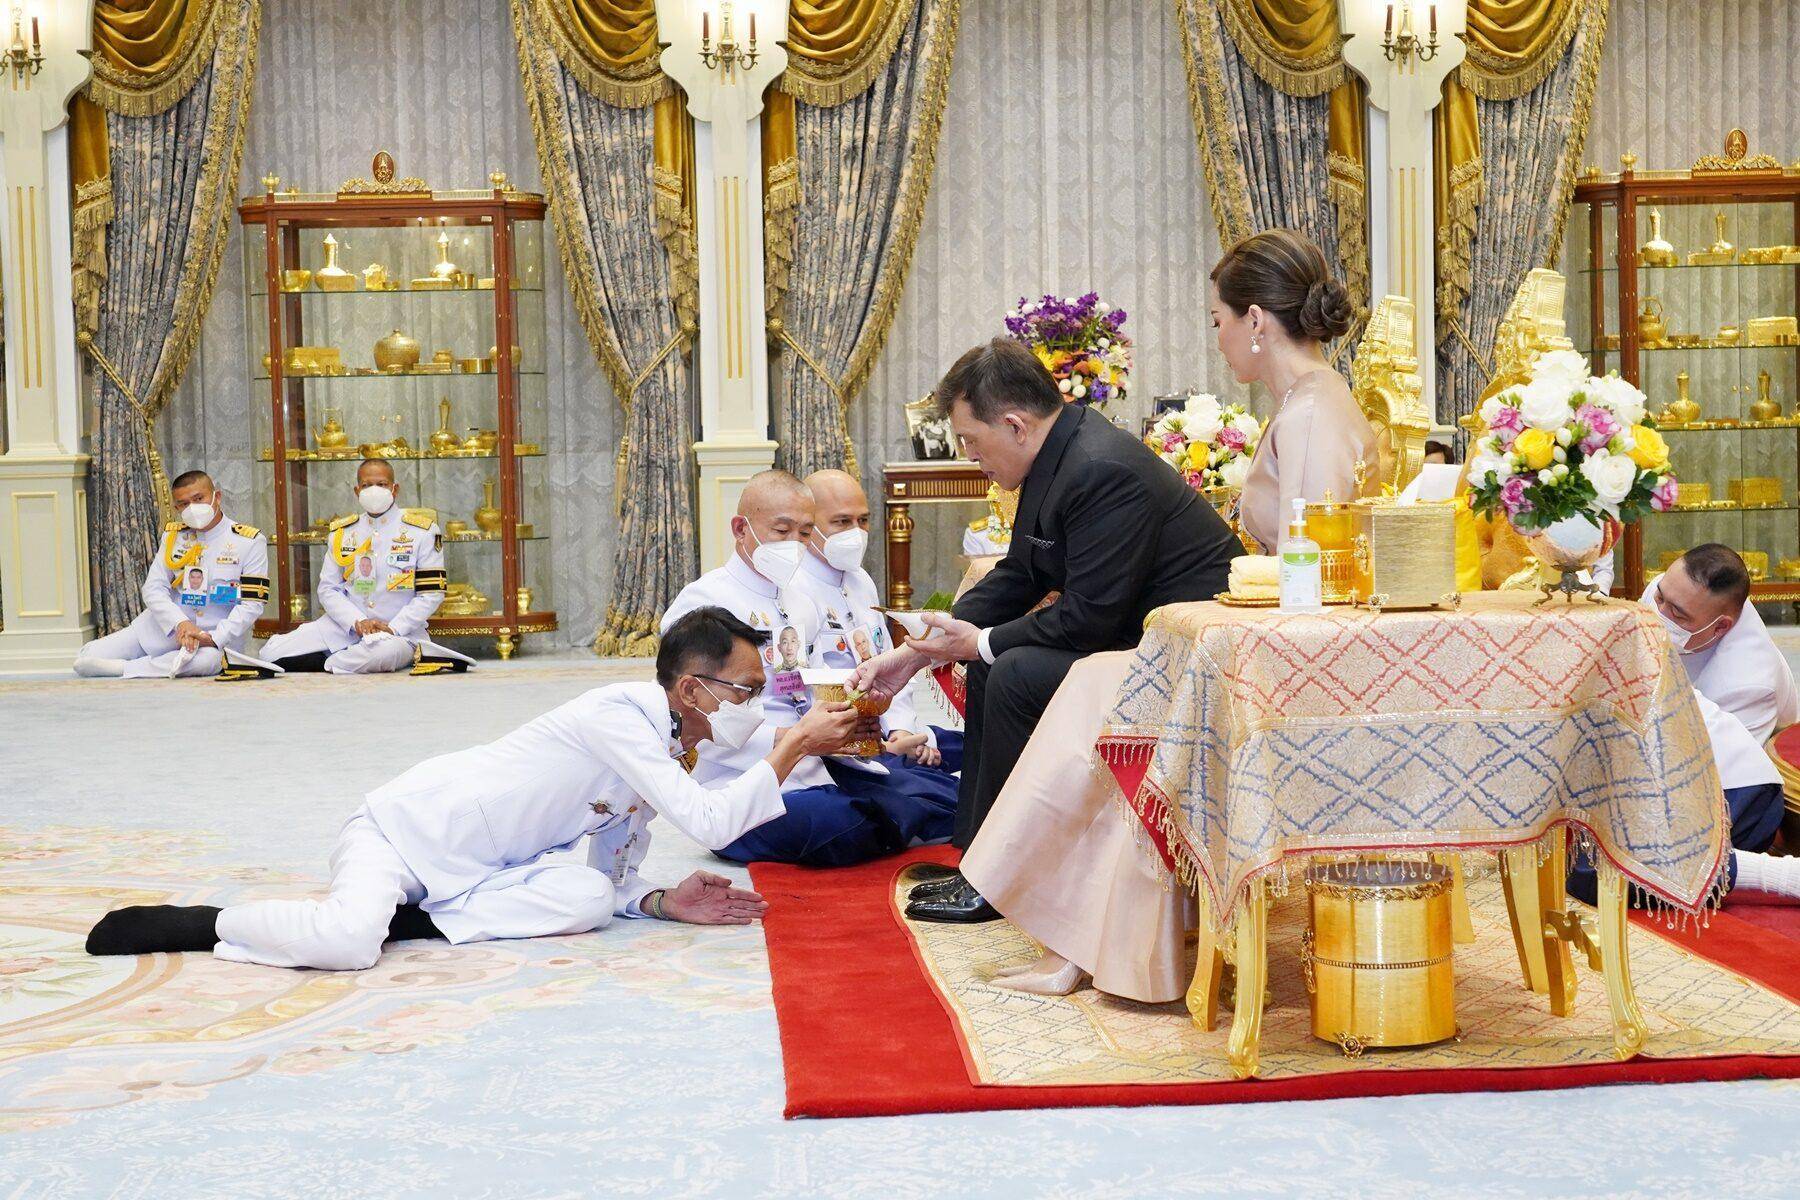 苏提达踩着高跟鞋却还要跪着,泰国王室的跪拜礼确实是有些费膝盖啊!